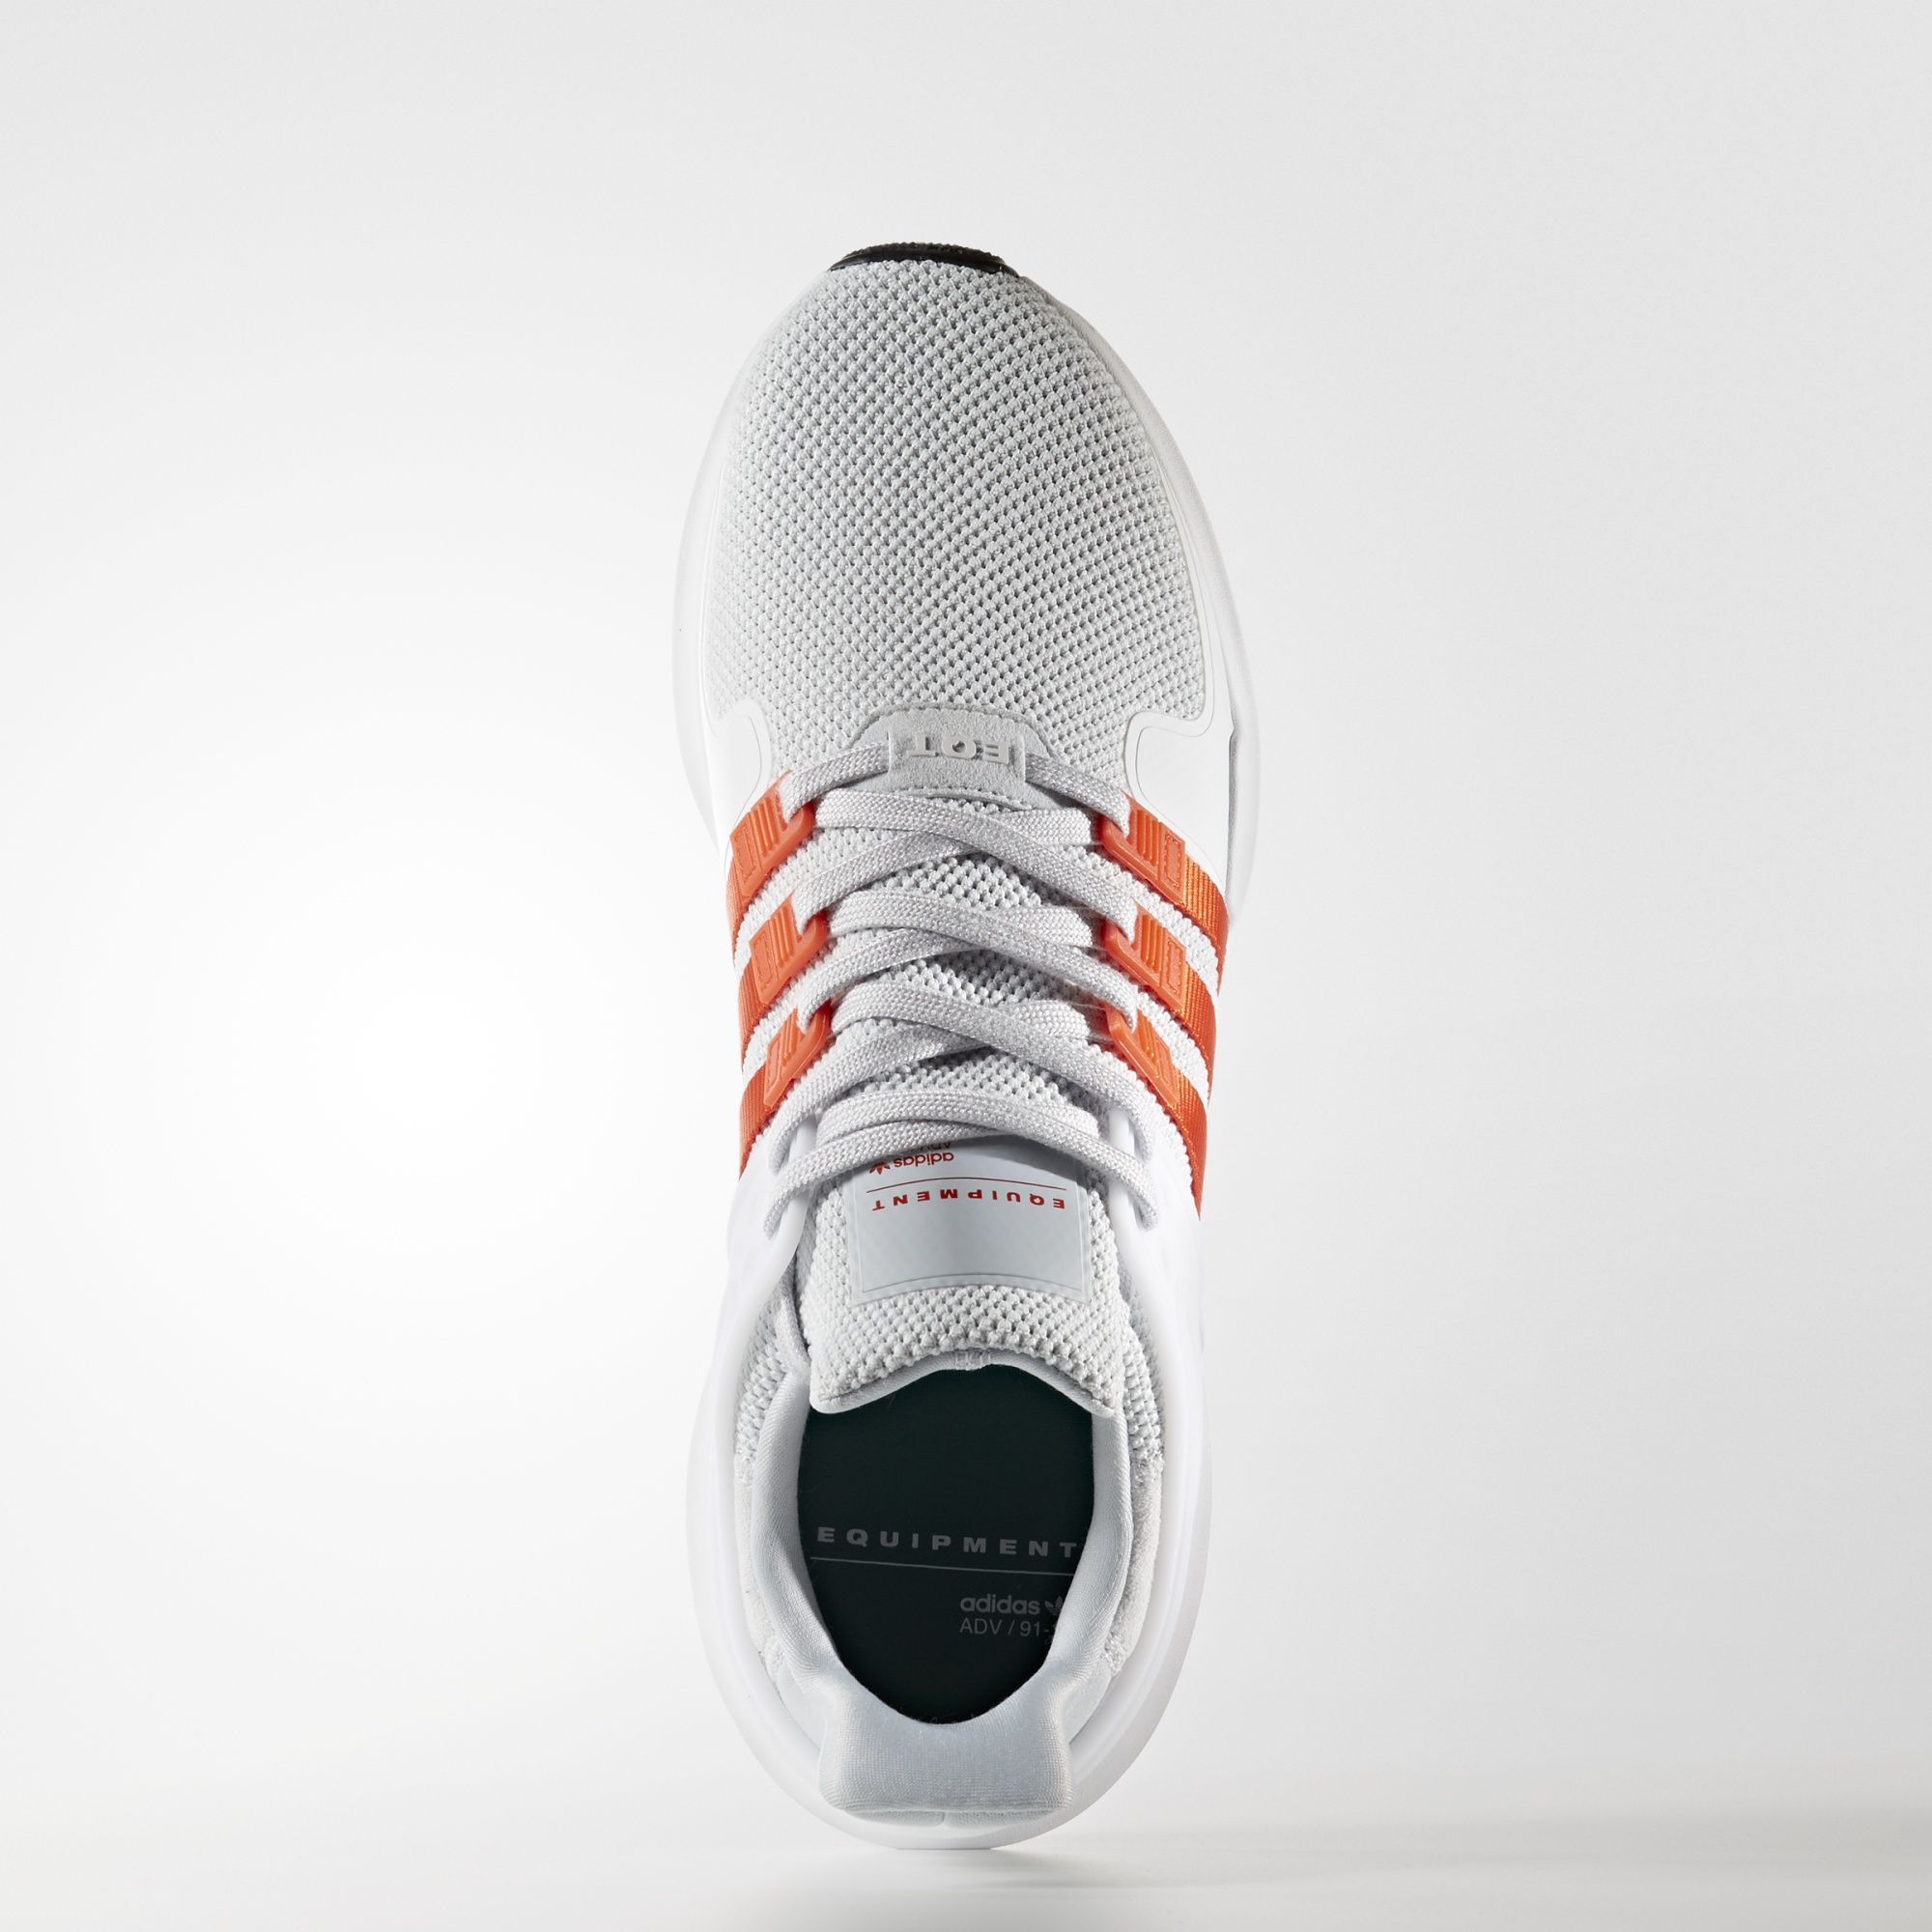 adidas-eqt-support-adv-white-bold-orange-4